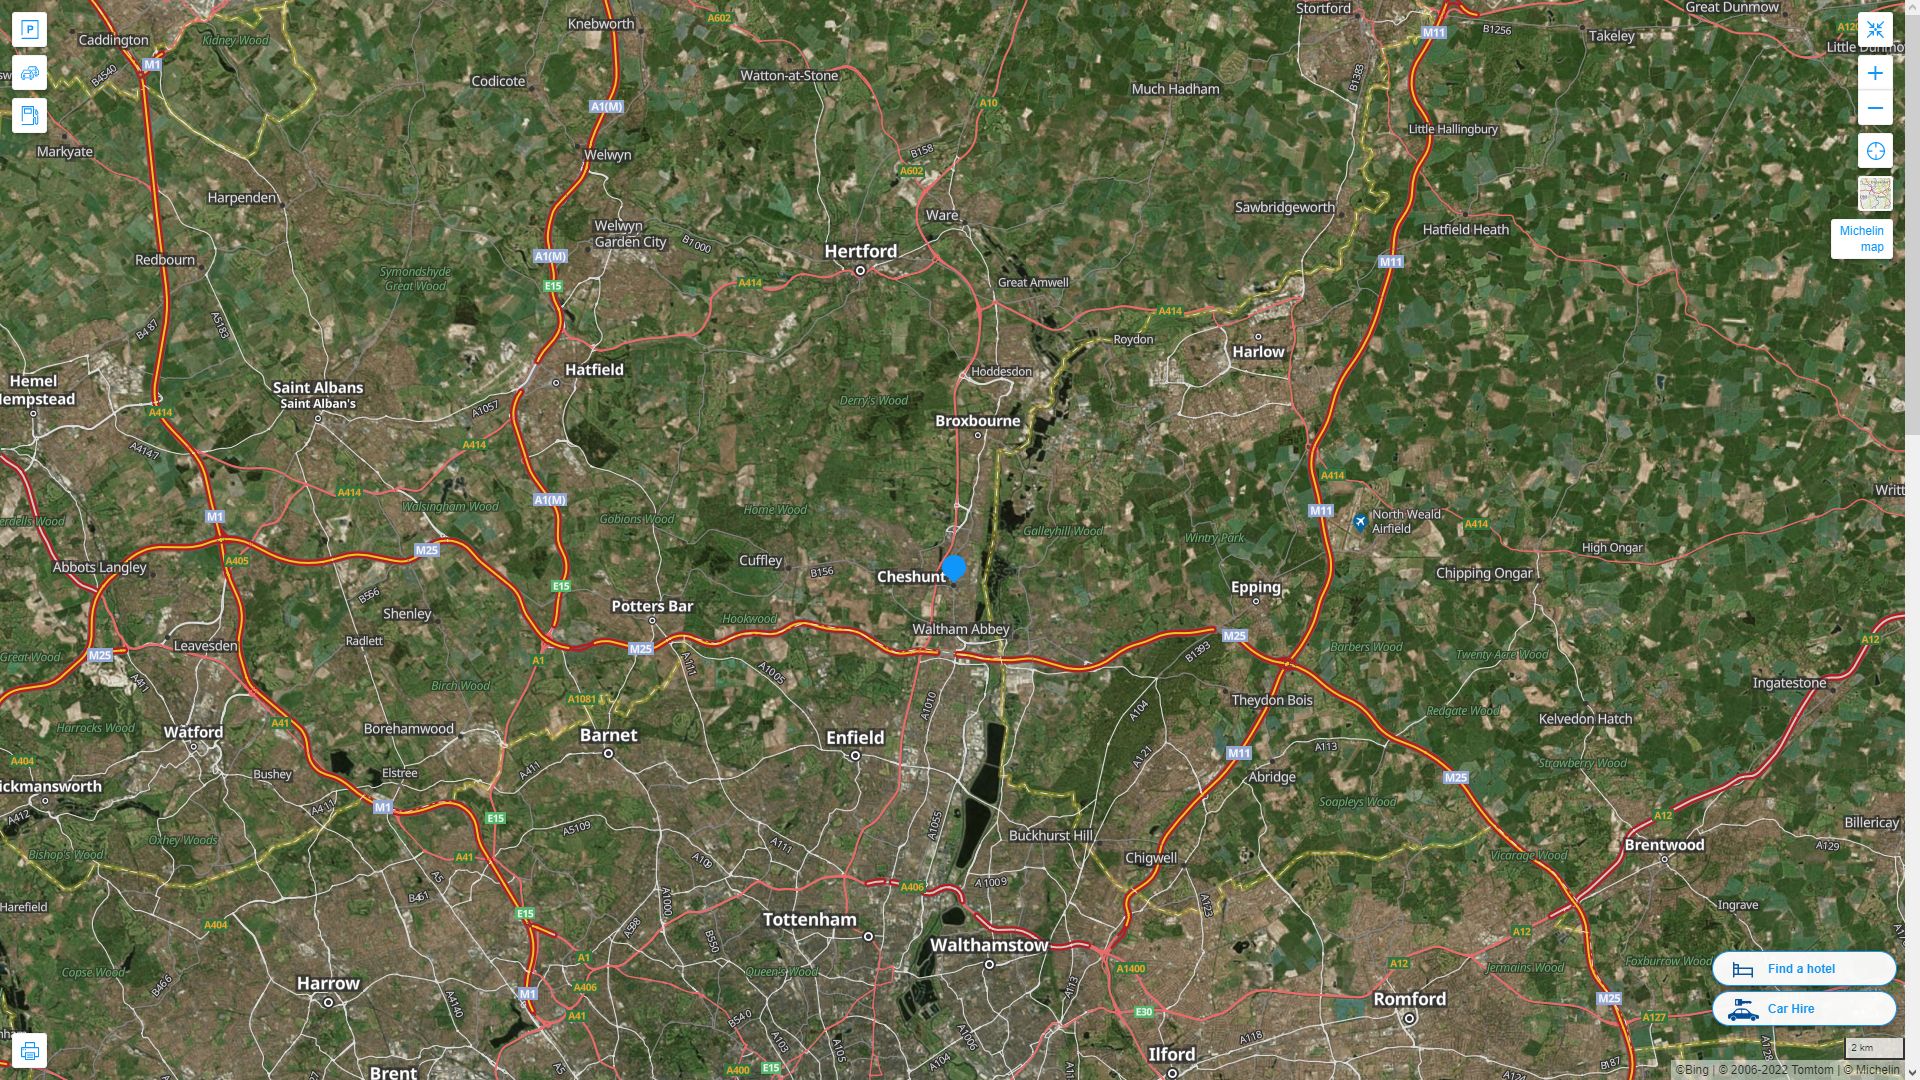 Cheshunt Royaume Uni Autoroute et carte routiere avec vue satellite